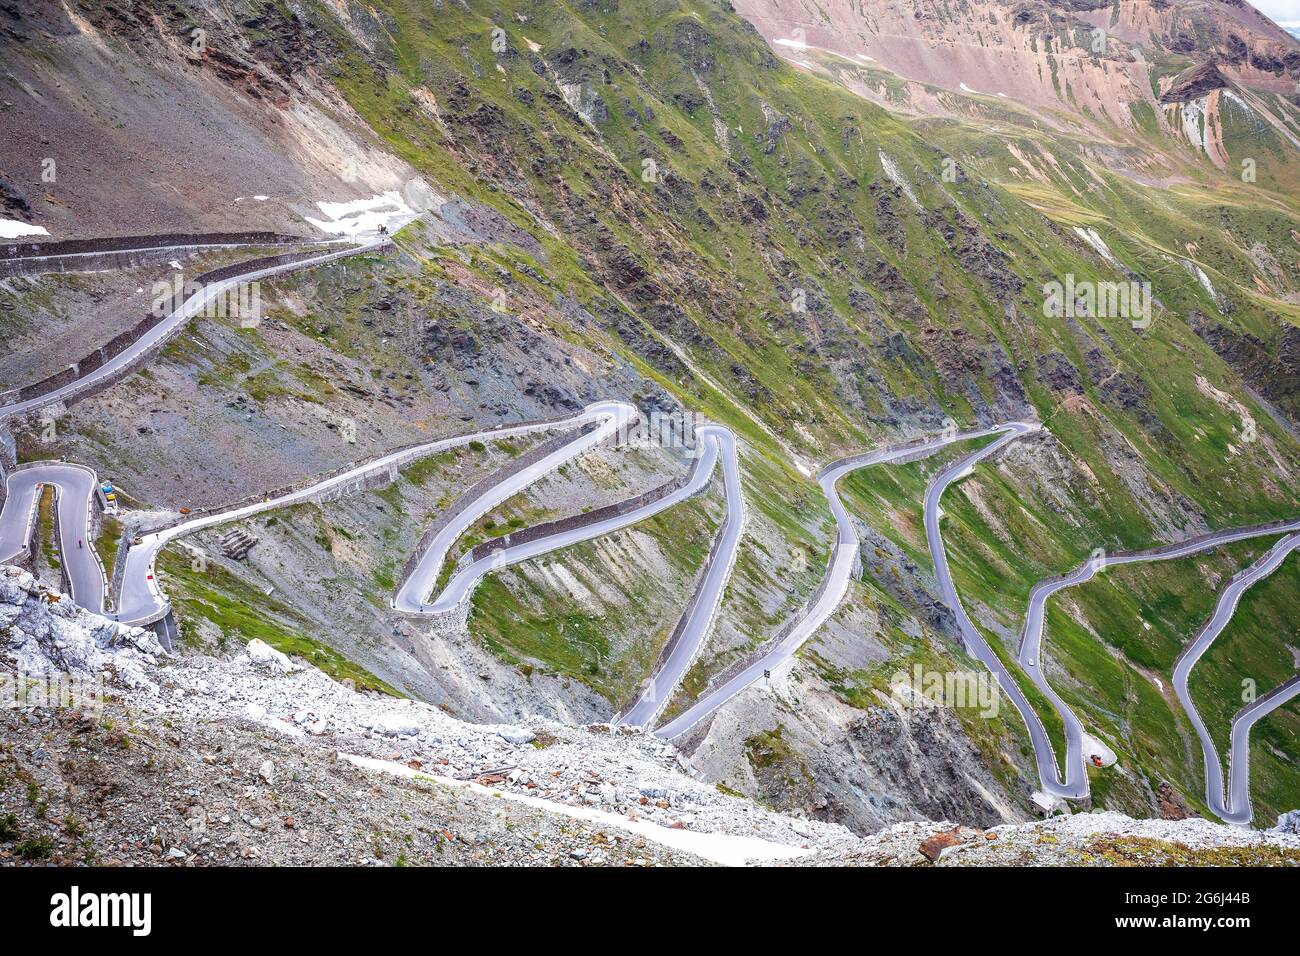 Stilfser Joch Bergpass oder Stilfser Joch landschaftlich schöner Blick auf die Straße, Grenze zwischen Italien und der Schweiz Stockfoto